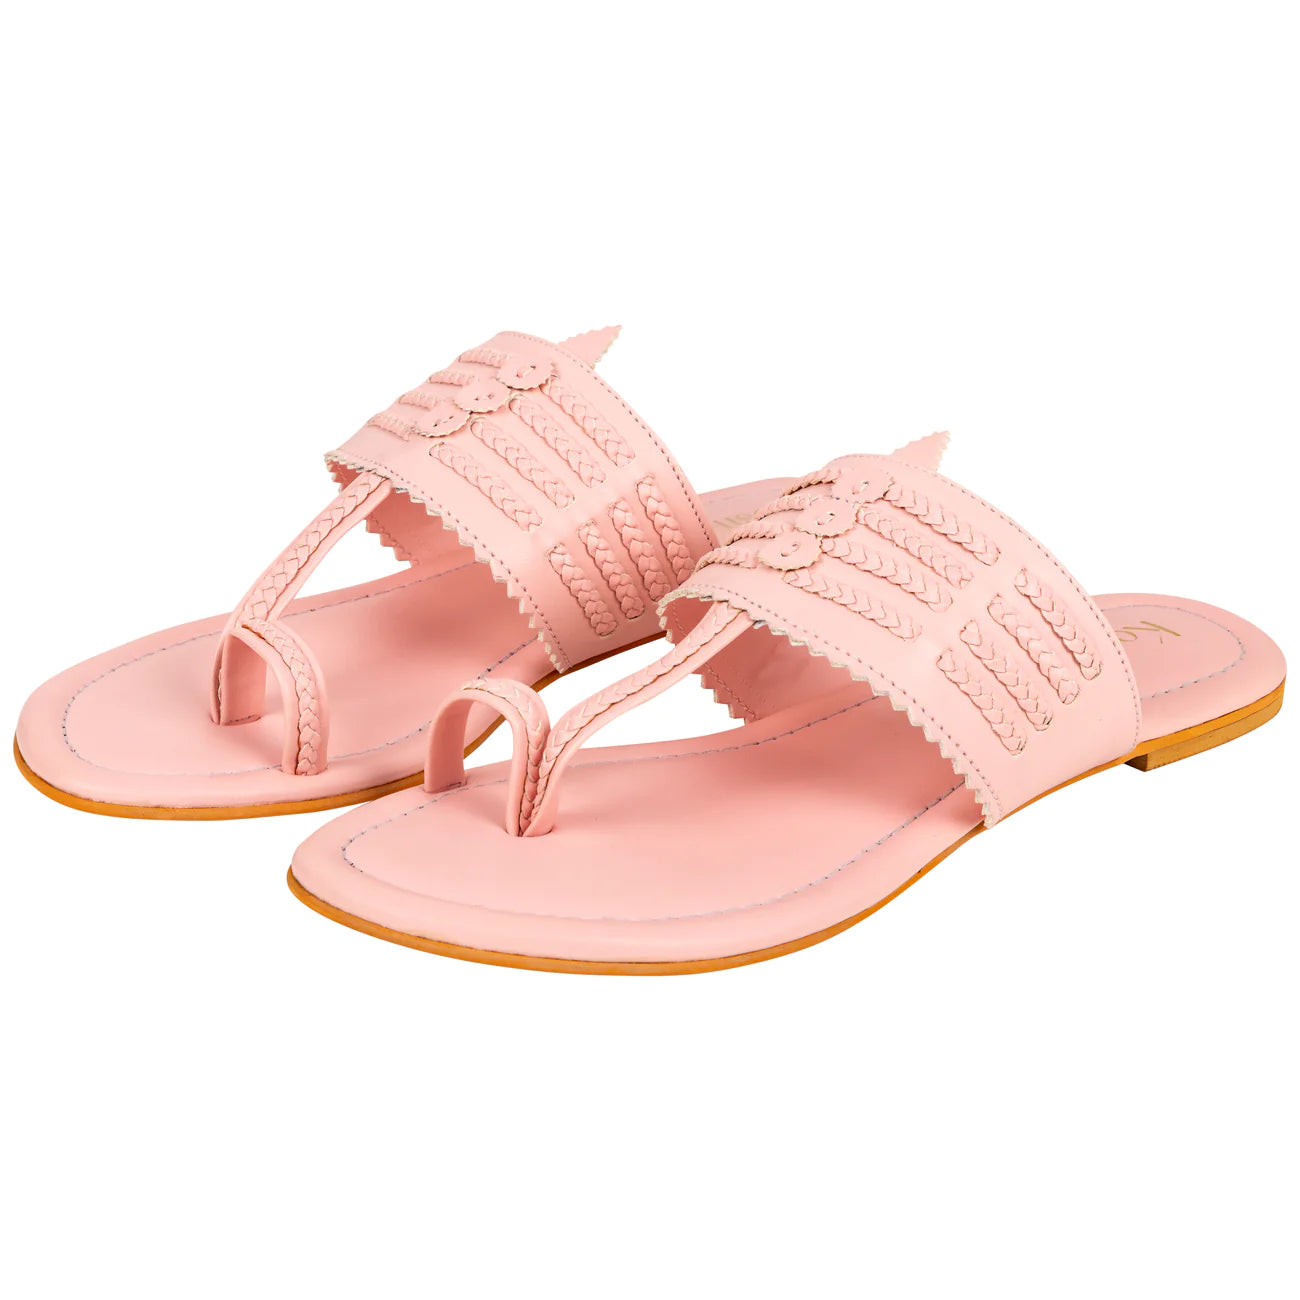 Light Pink Flat Sandals For Women